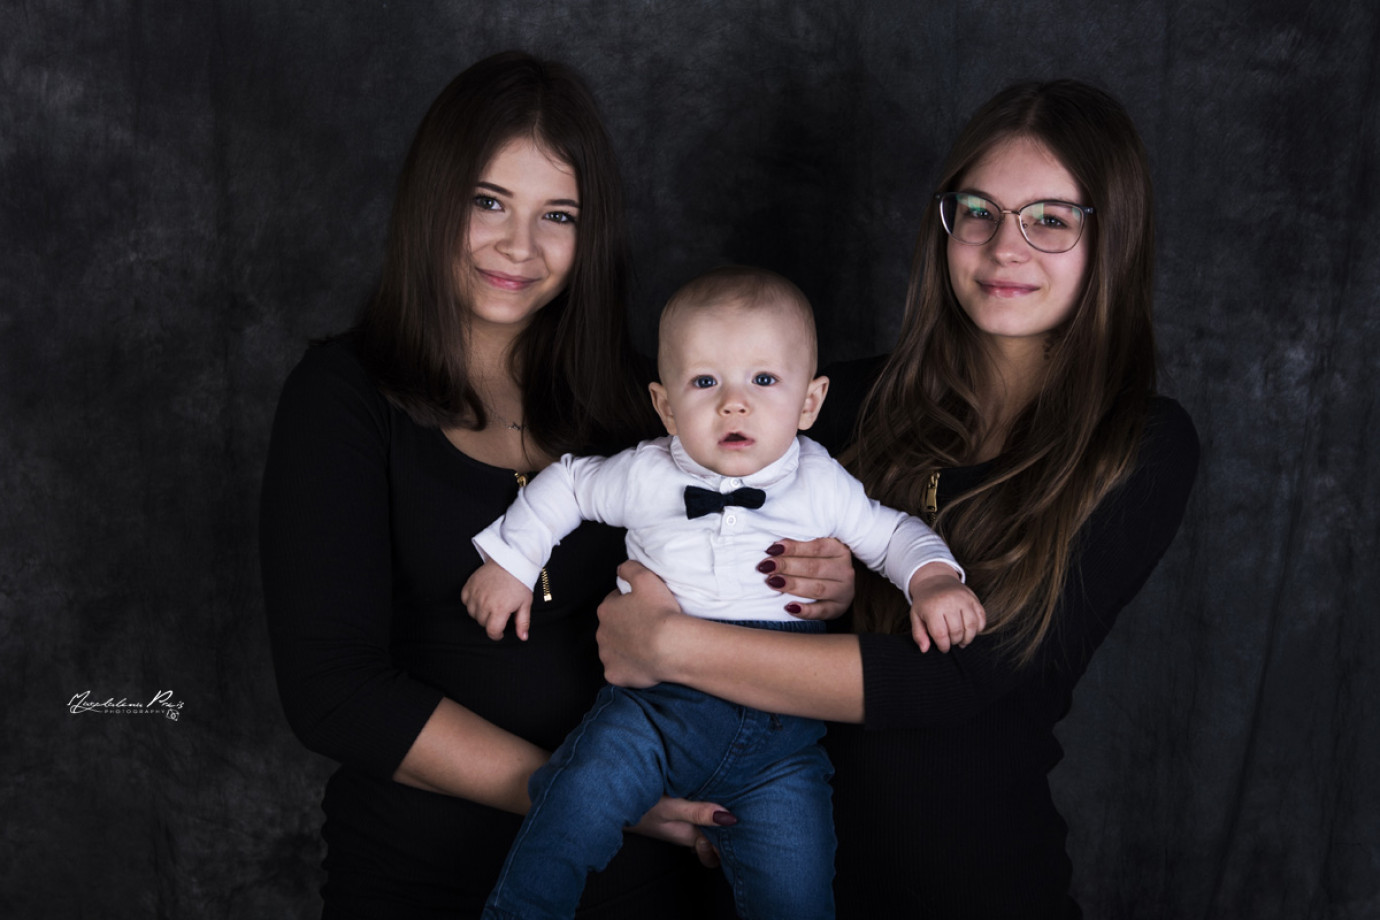 fotograf aleksandrow-kujawski studio-fotografii-artystycznej portfolio zdjecia rodzinne fotografia rodzinna sesja